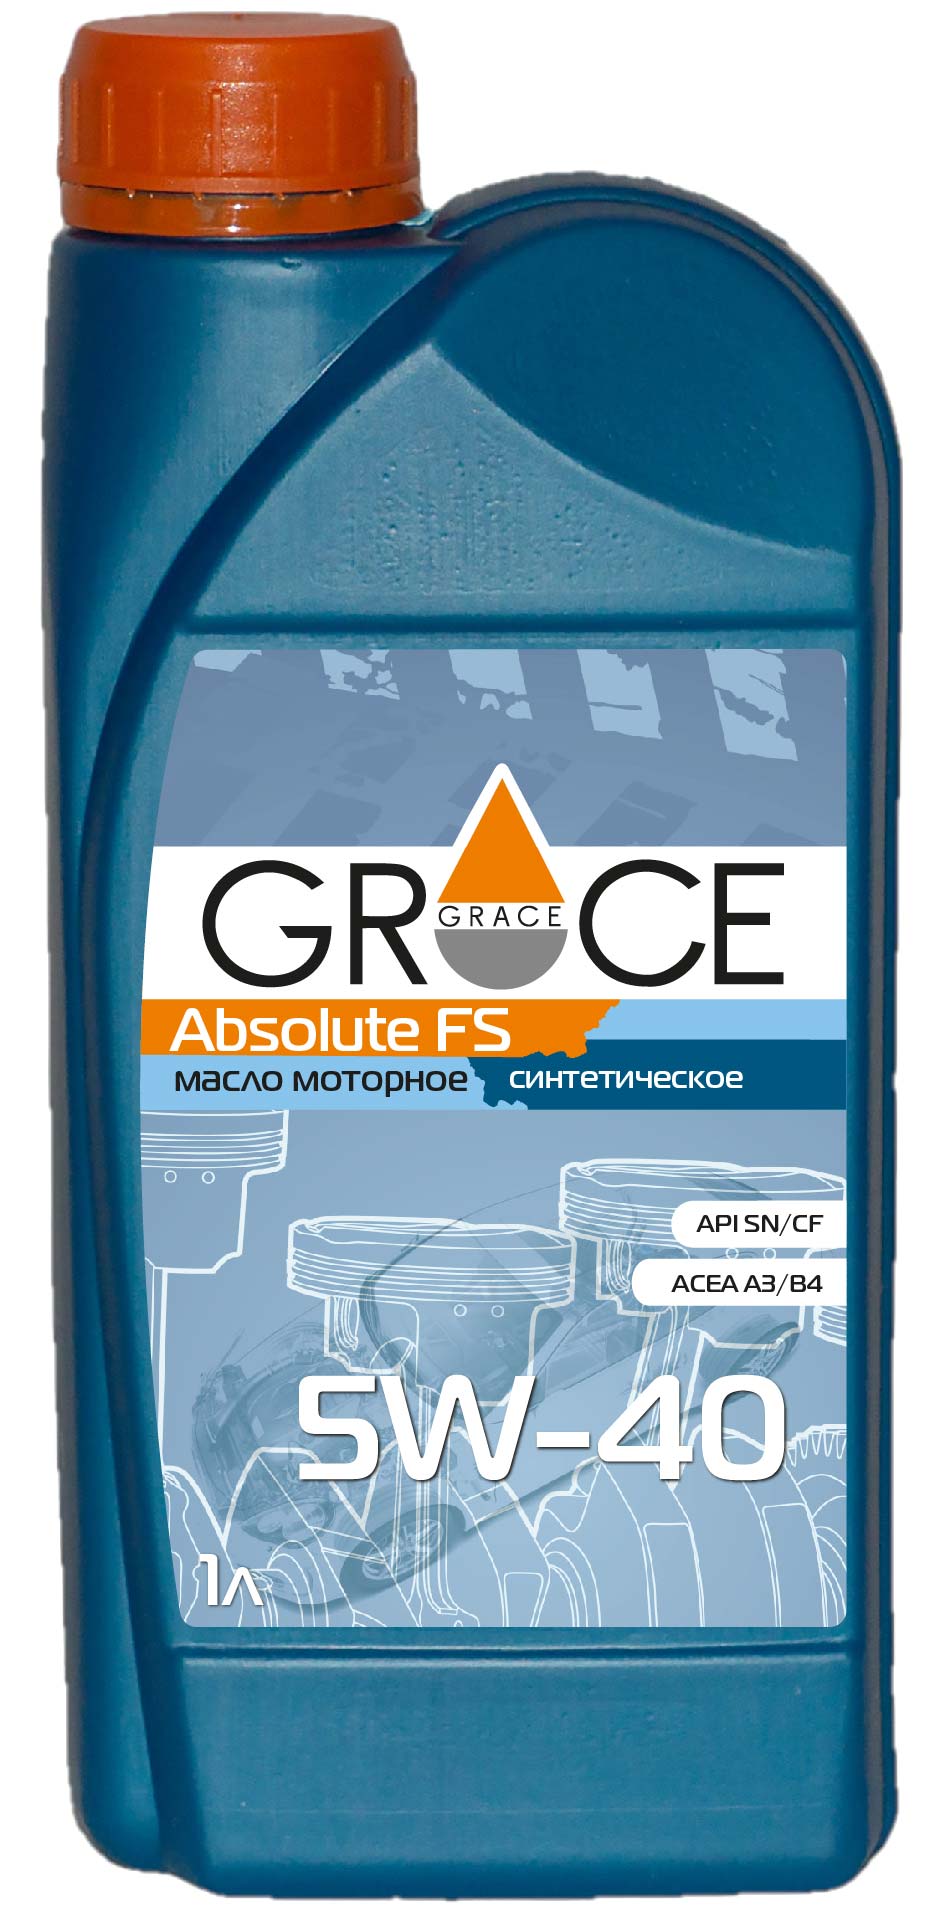 Моторное масло синтетическое GRACE 4603728811253 Аbsolute FS 5W-40, 1 литр